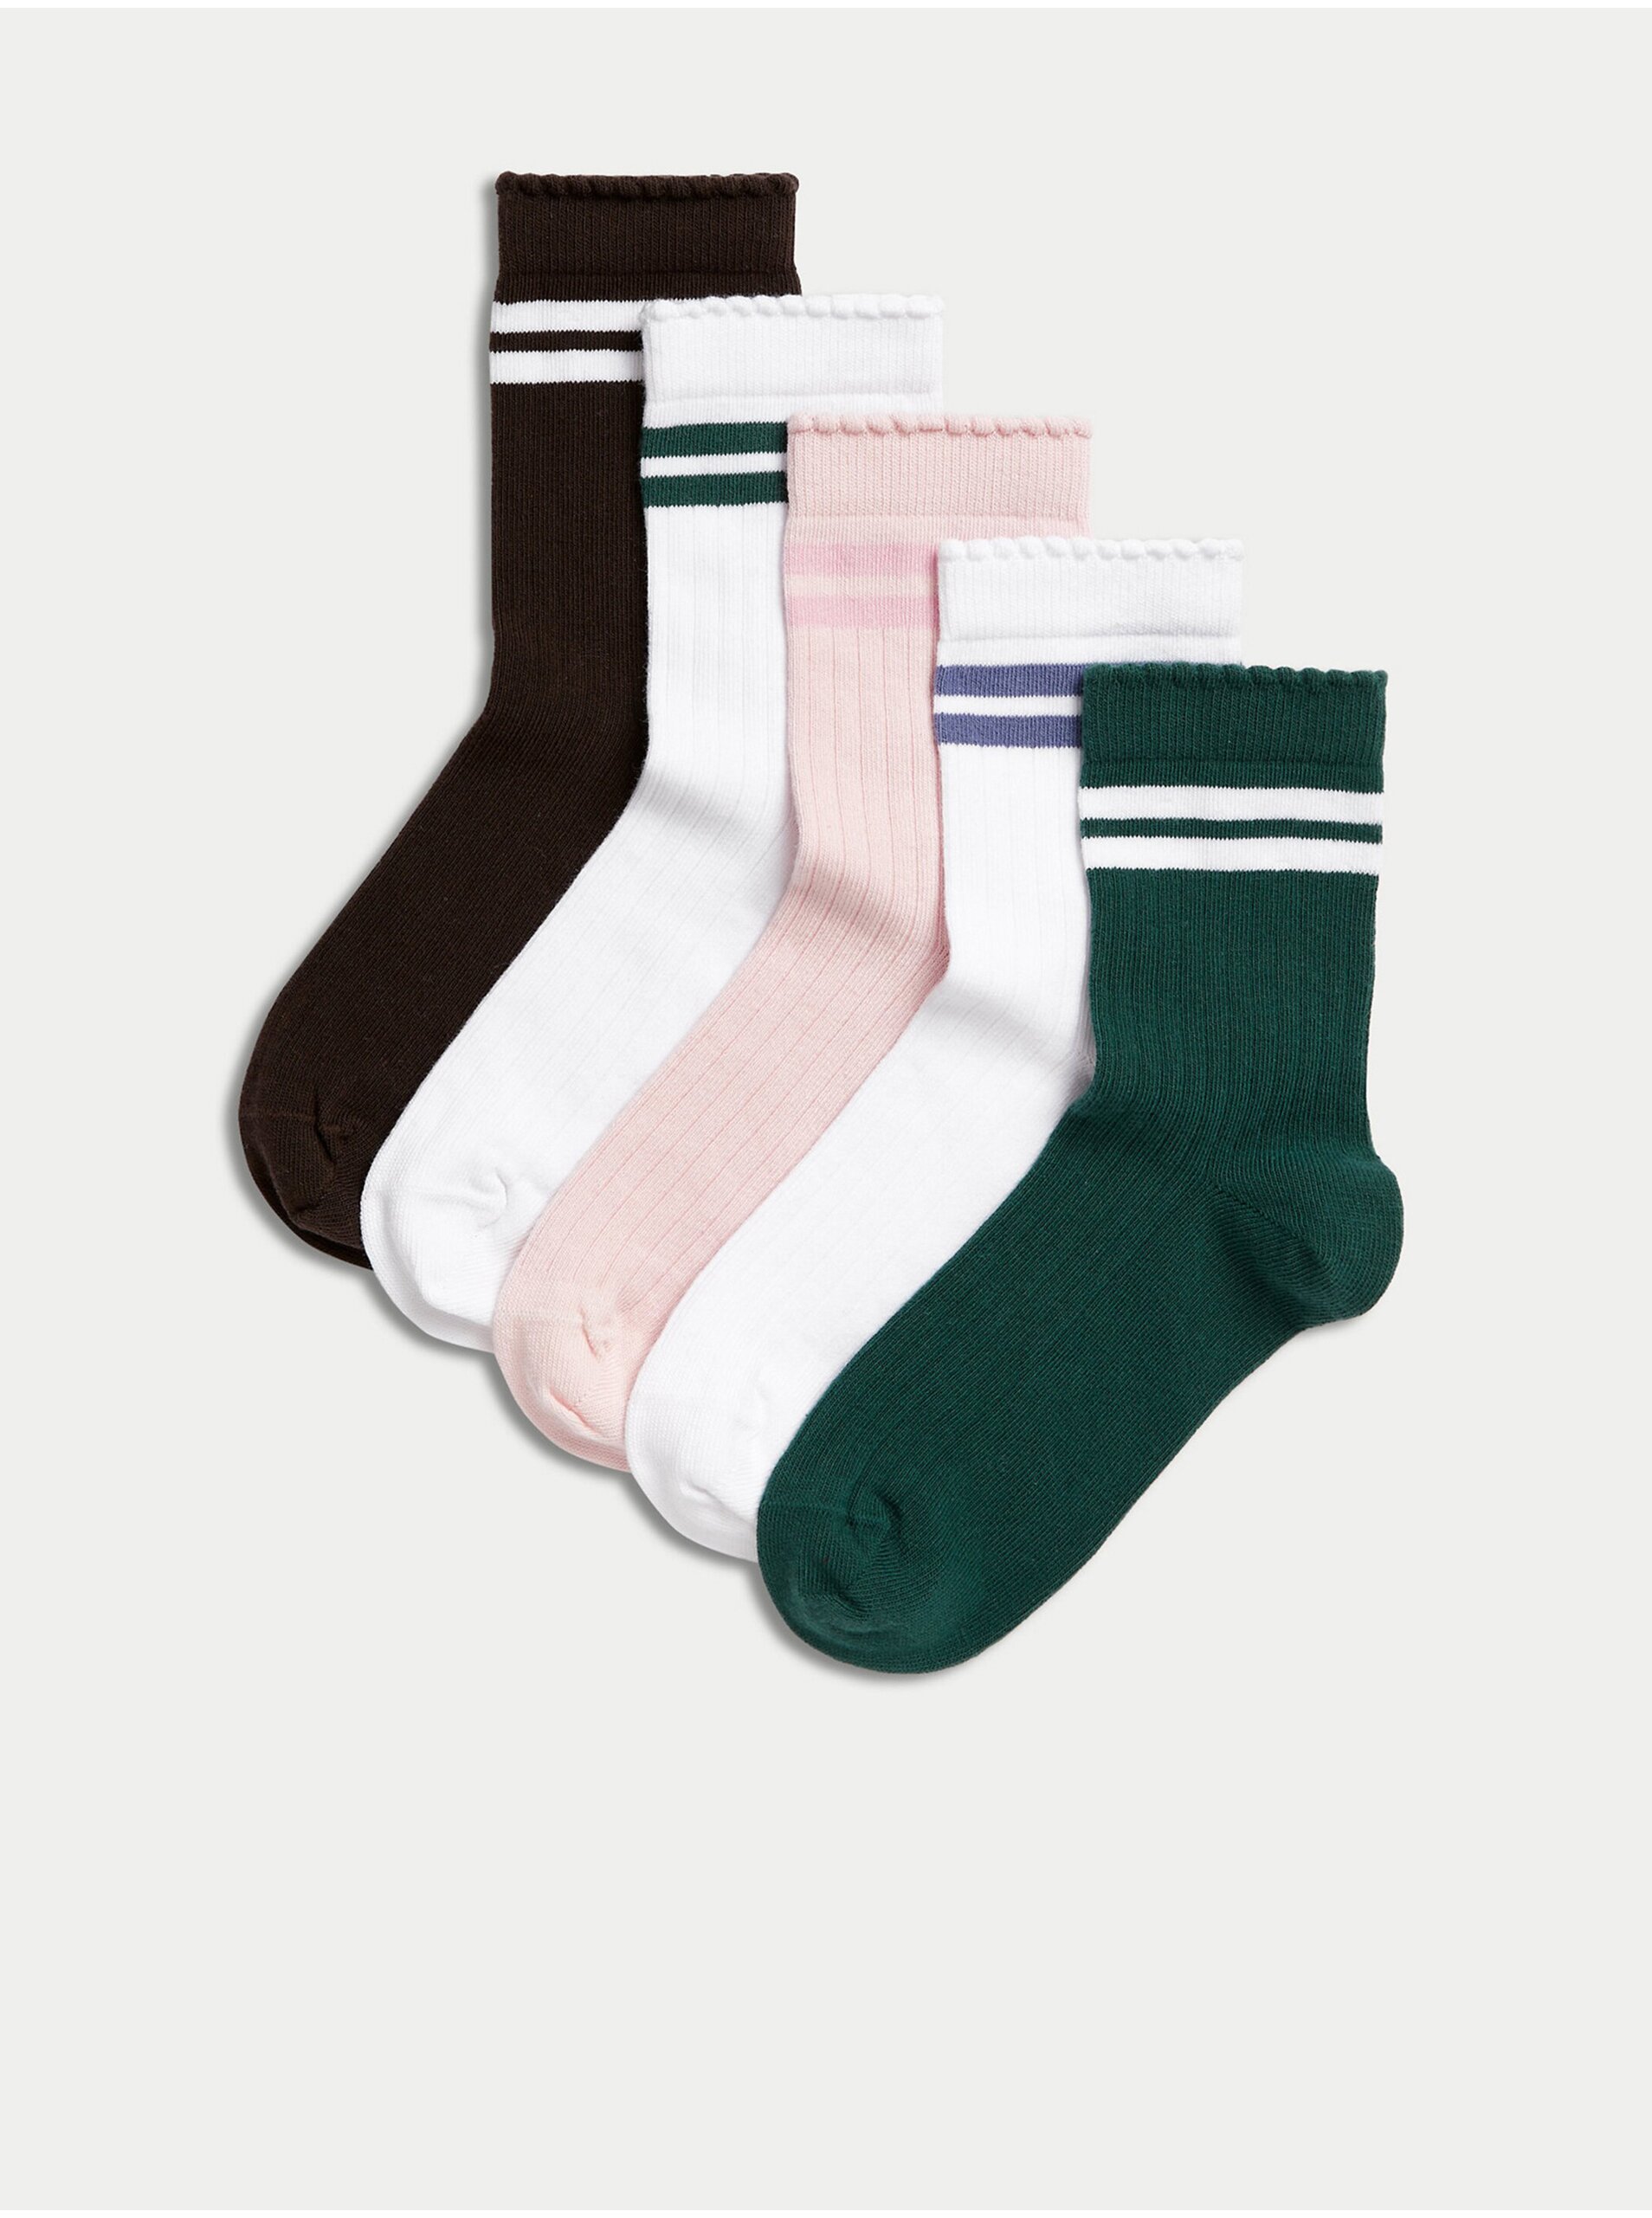 Levně Sada pěti párů holčičích ponožek včerné, bílé a modré barvě Marks & Spencer